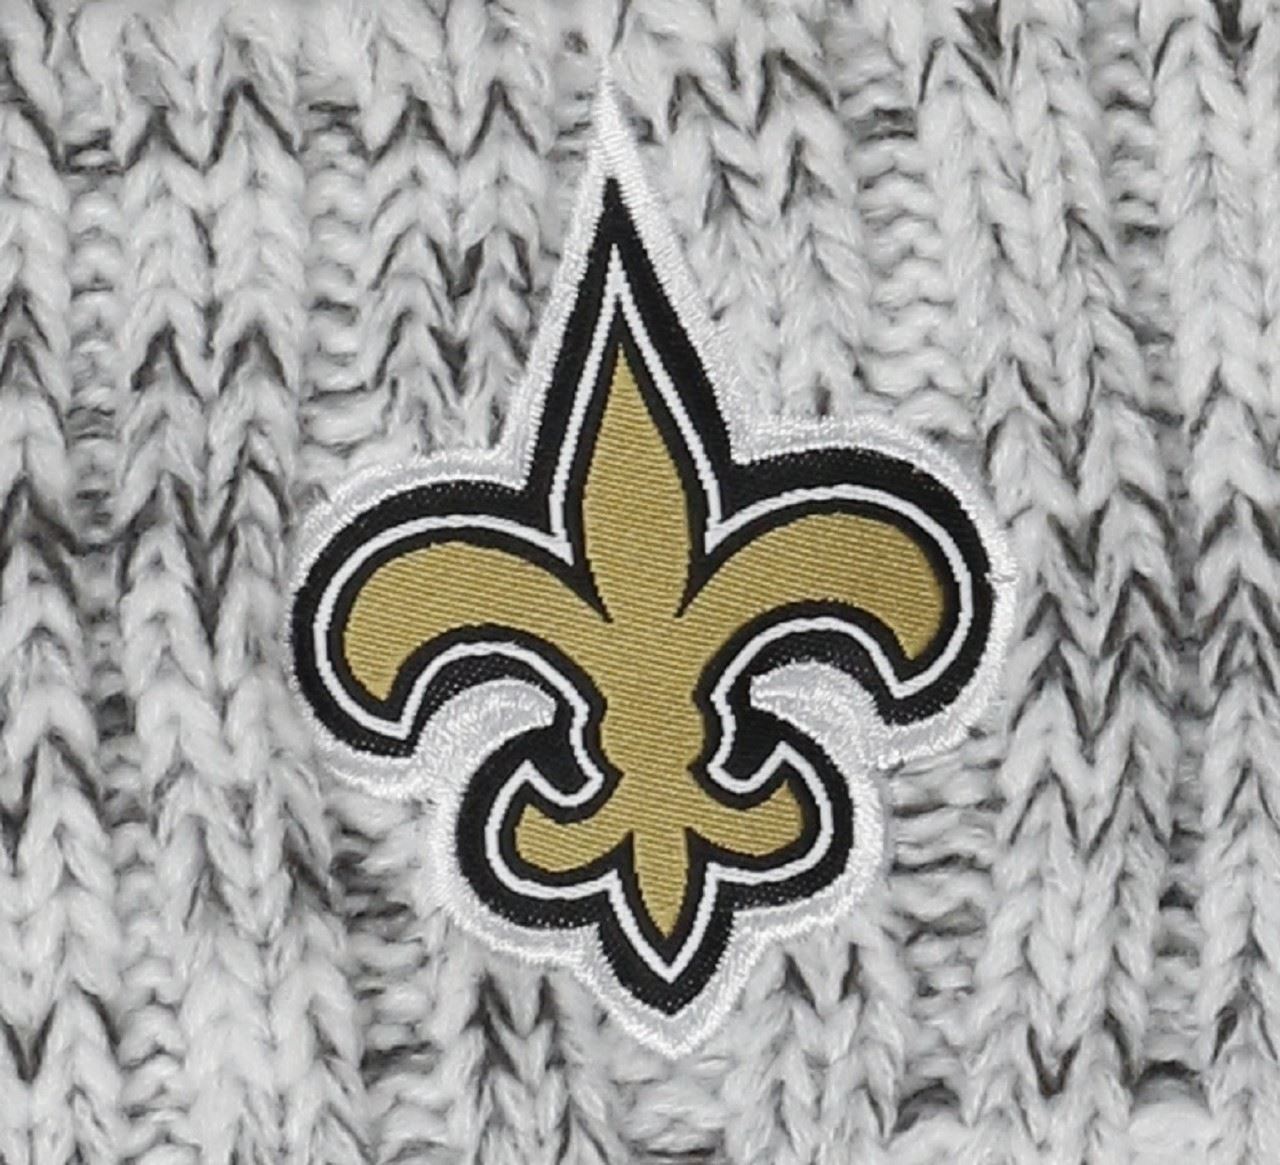 New Orleans Saints NFL 2019 Sideline Women Beanie Heather Graphite New Era